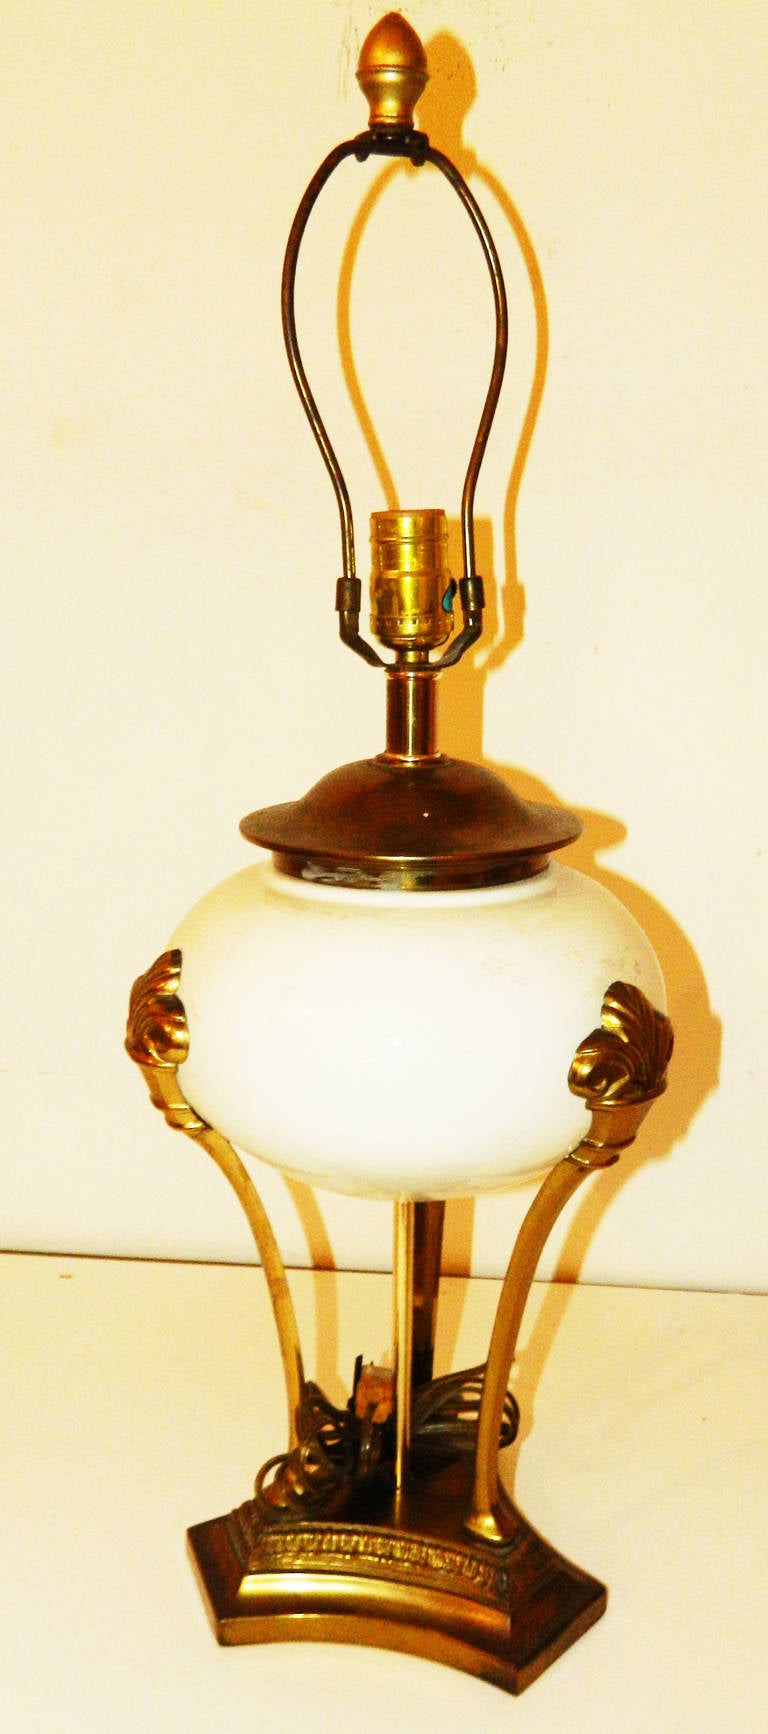 Très belle paire de lampe de table néoclassique de style Chapman.
26